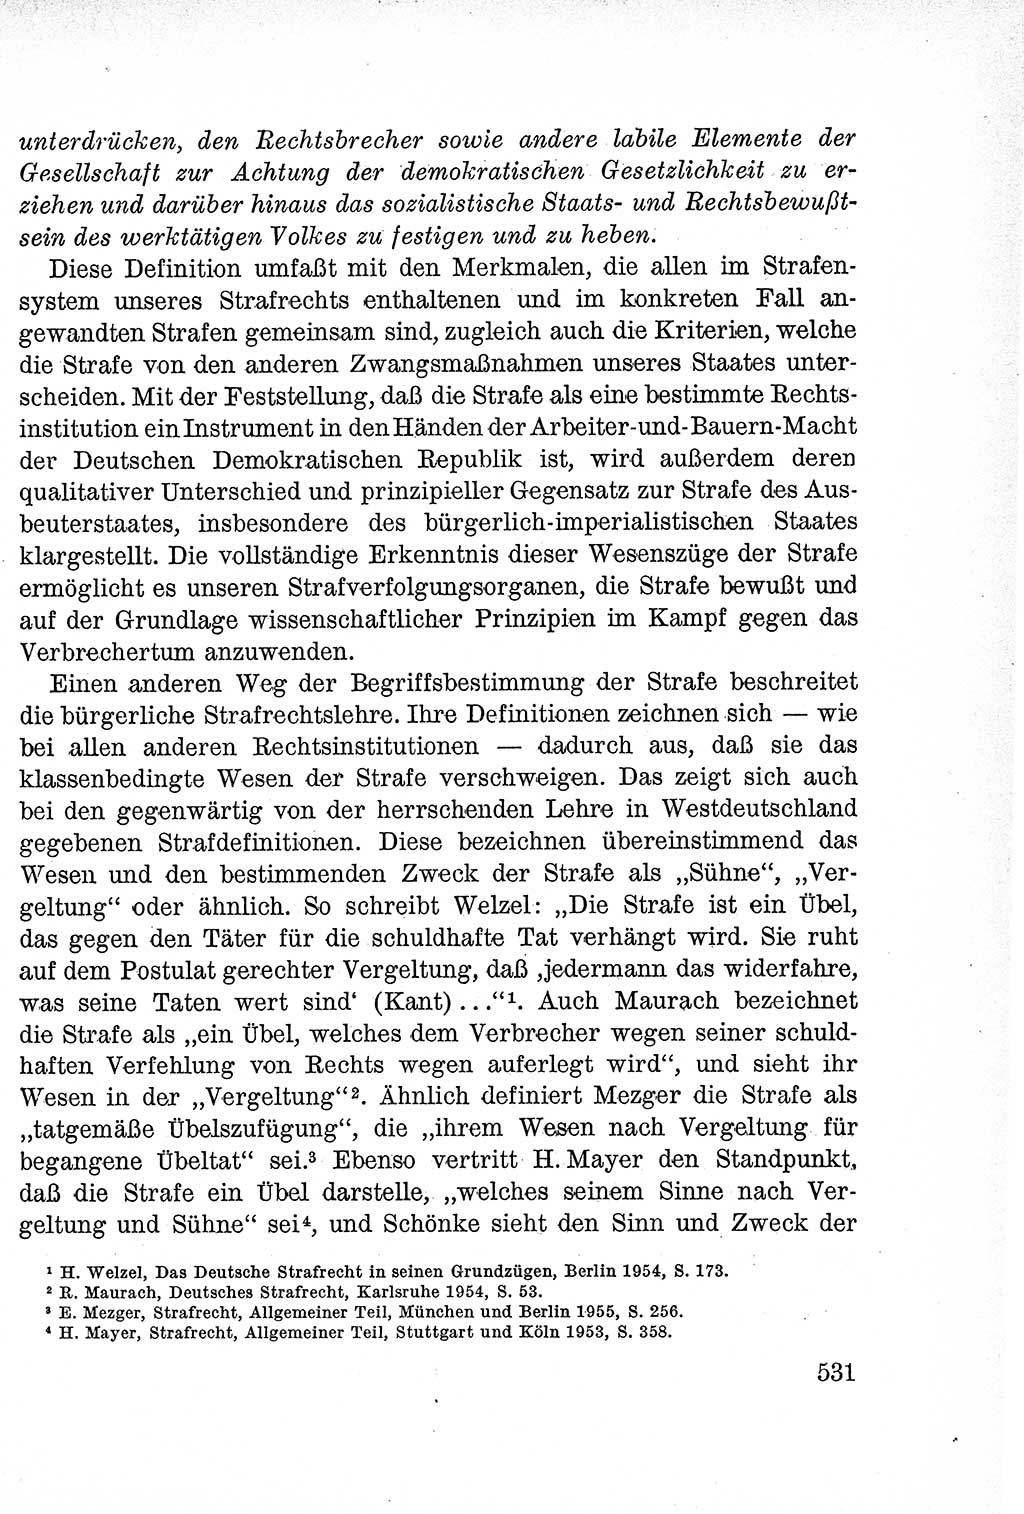 Lehrbuch des Strafrechts der Deutschen Demokratischen Republik (DDR), Allgemeiner Teil 1957, Seite 531 (Lb. Strafr. DDR AT 1957, S. 531)